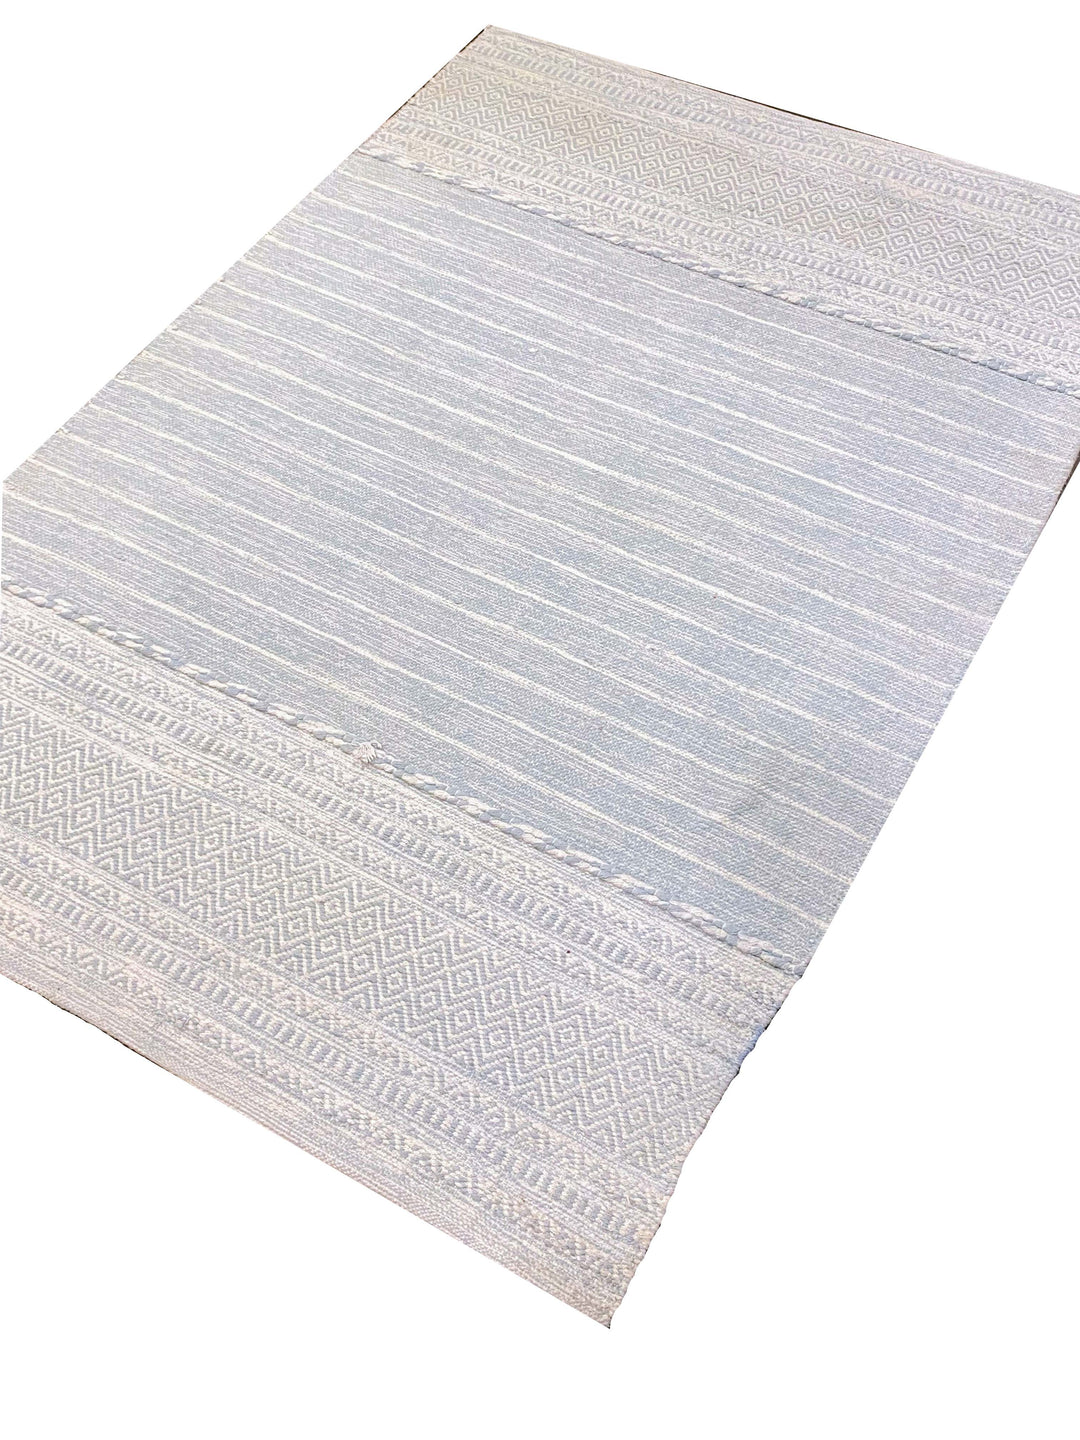 Secerna Vata- Size: 5.9 x 4.0 - Imam Carpet Co